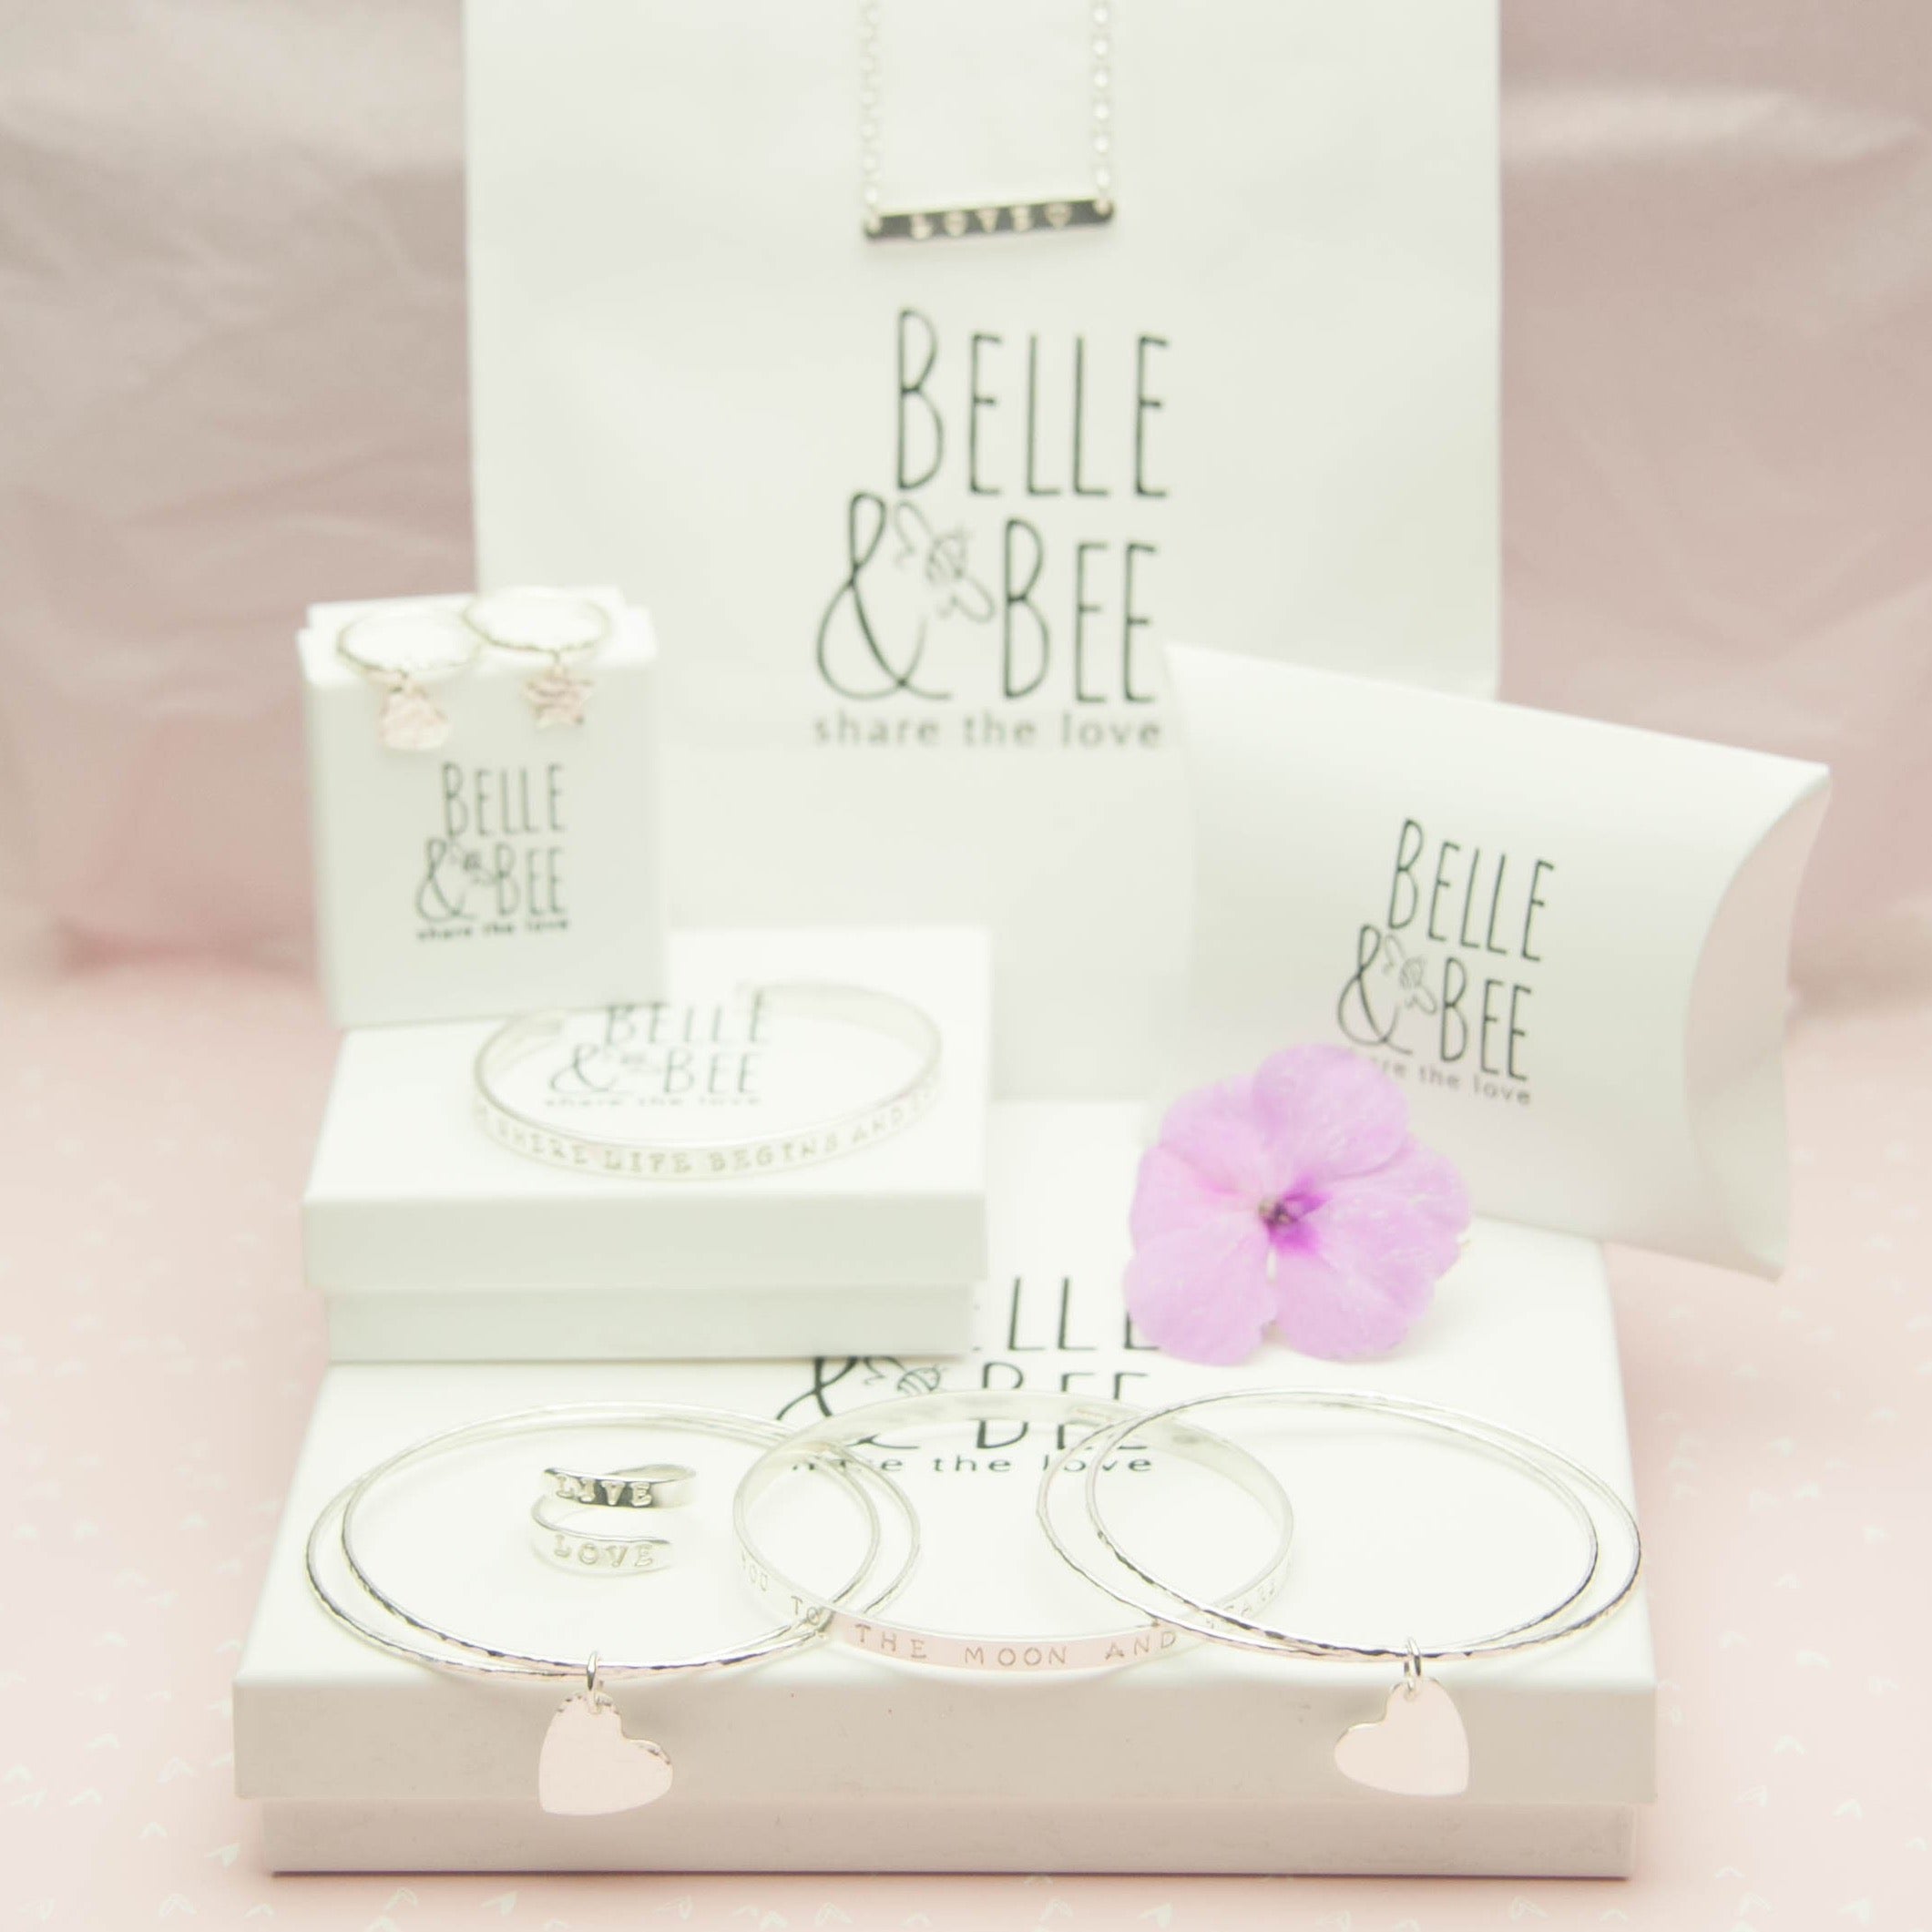 Belle & Bee packaging